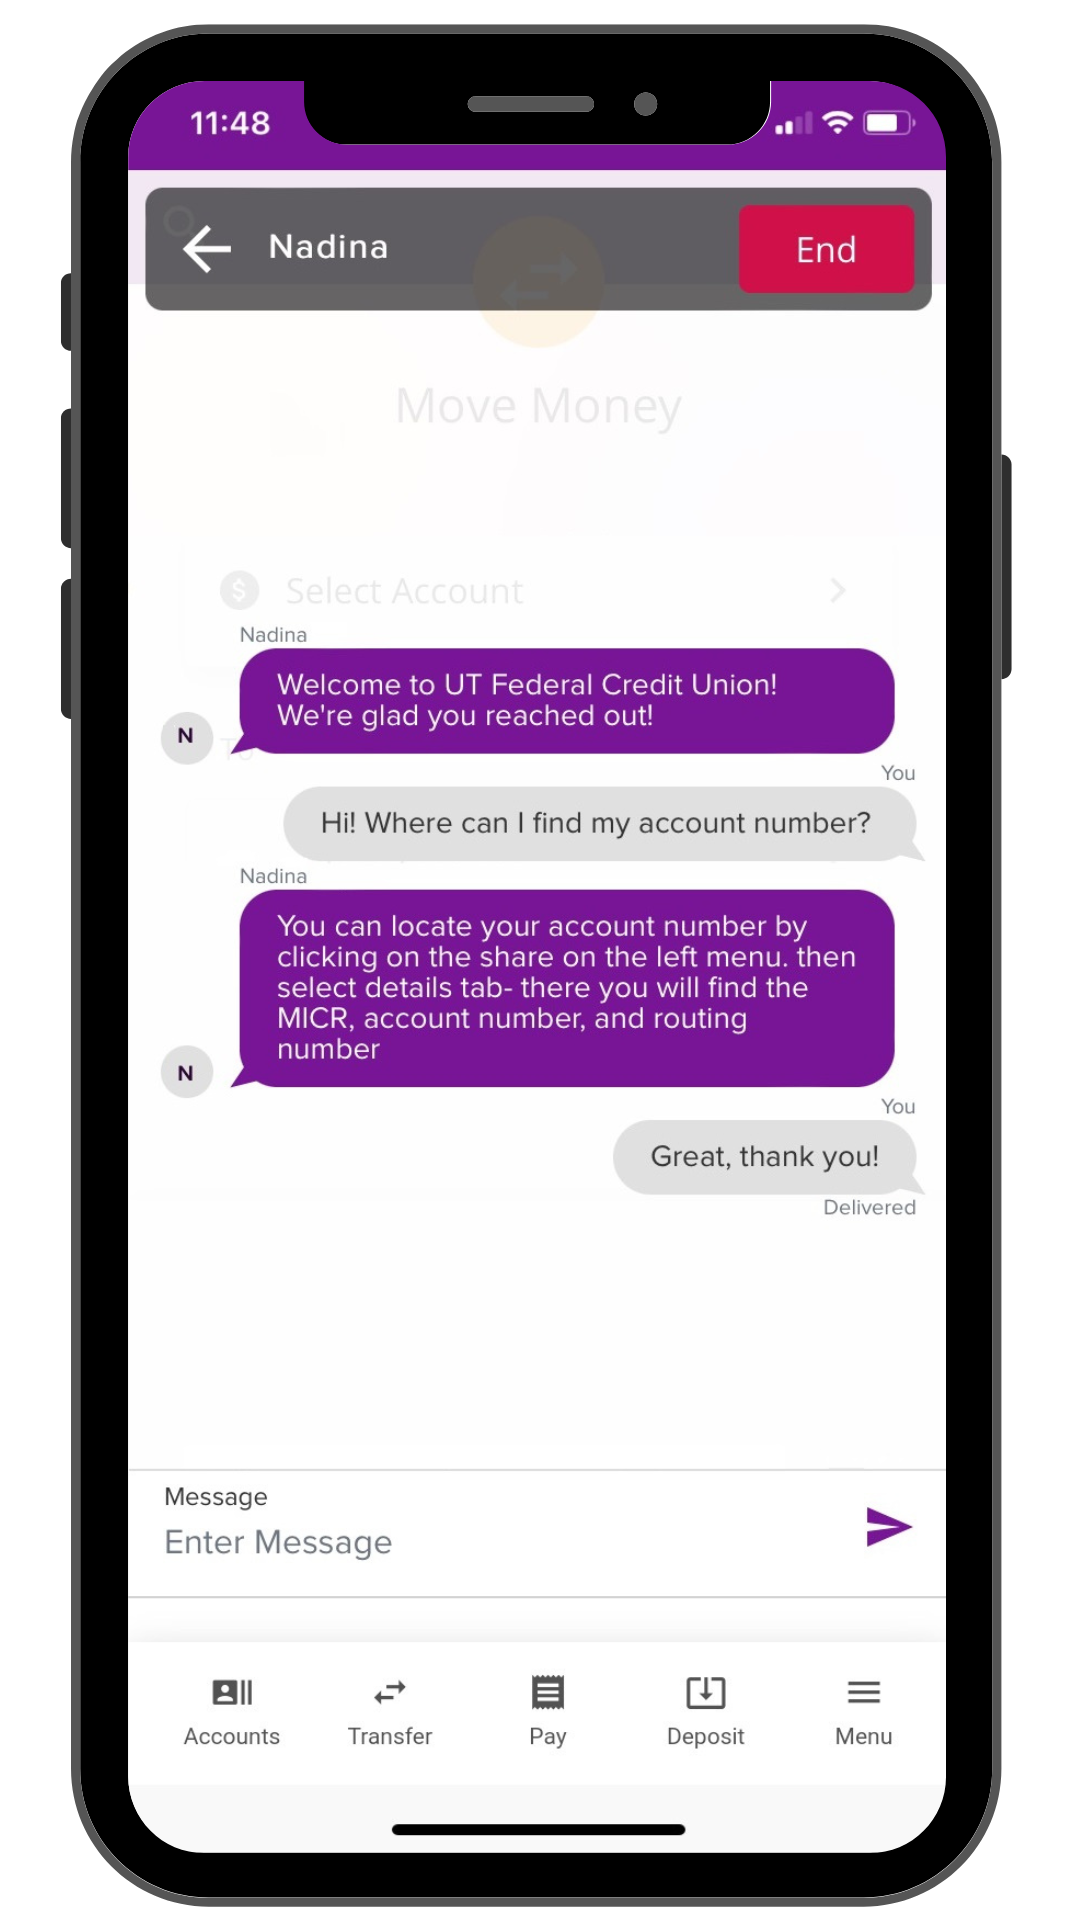 Sneak Peek of chat function inside of the UTFCU mobile app.